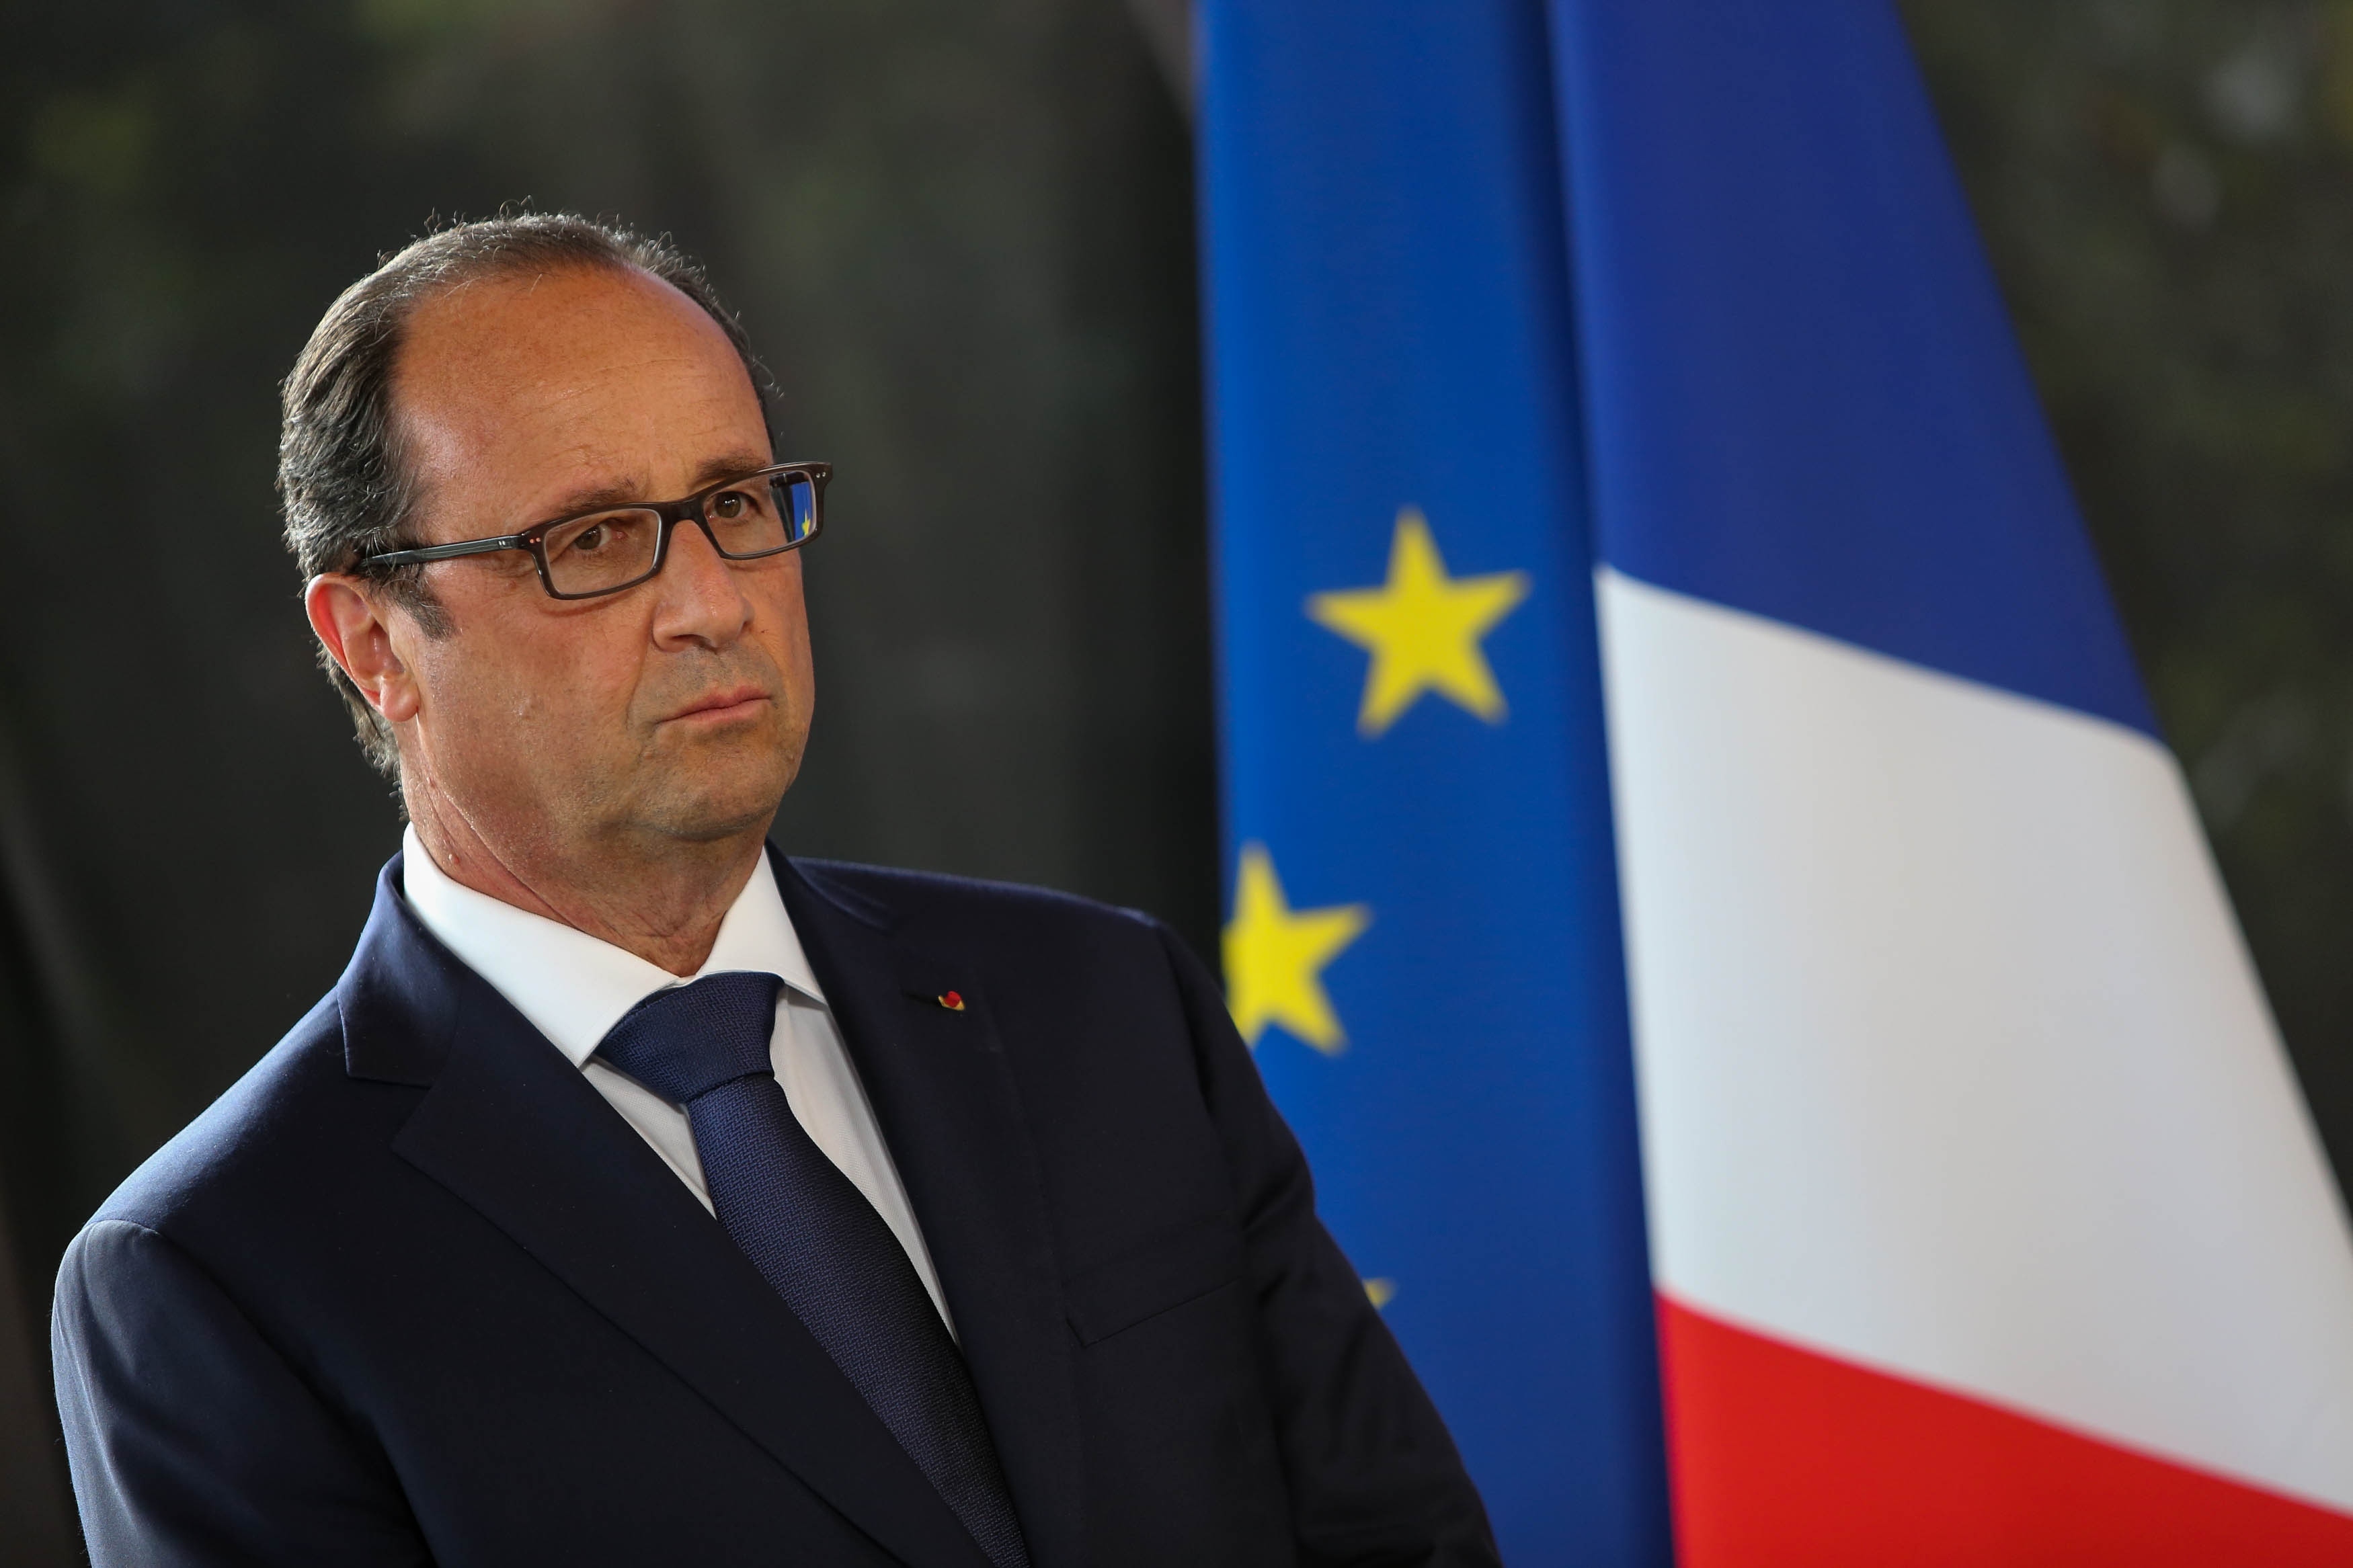 “Ο Ολάντ κάνει ανασχηματισμό στη σκιά της Μέρκελ” – Πρώτο θέμα ο Γάλλος πρόεδρος στα ευρωπαϊκά ΜΜΕ